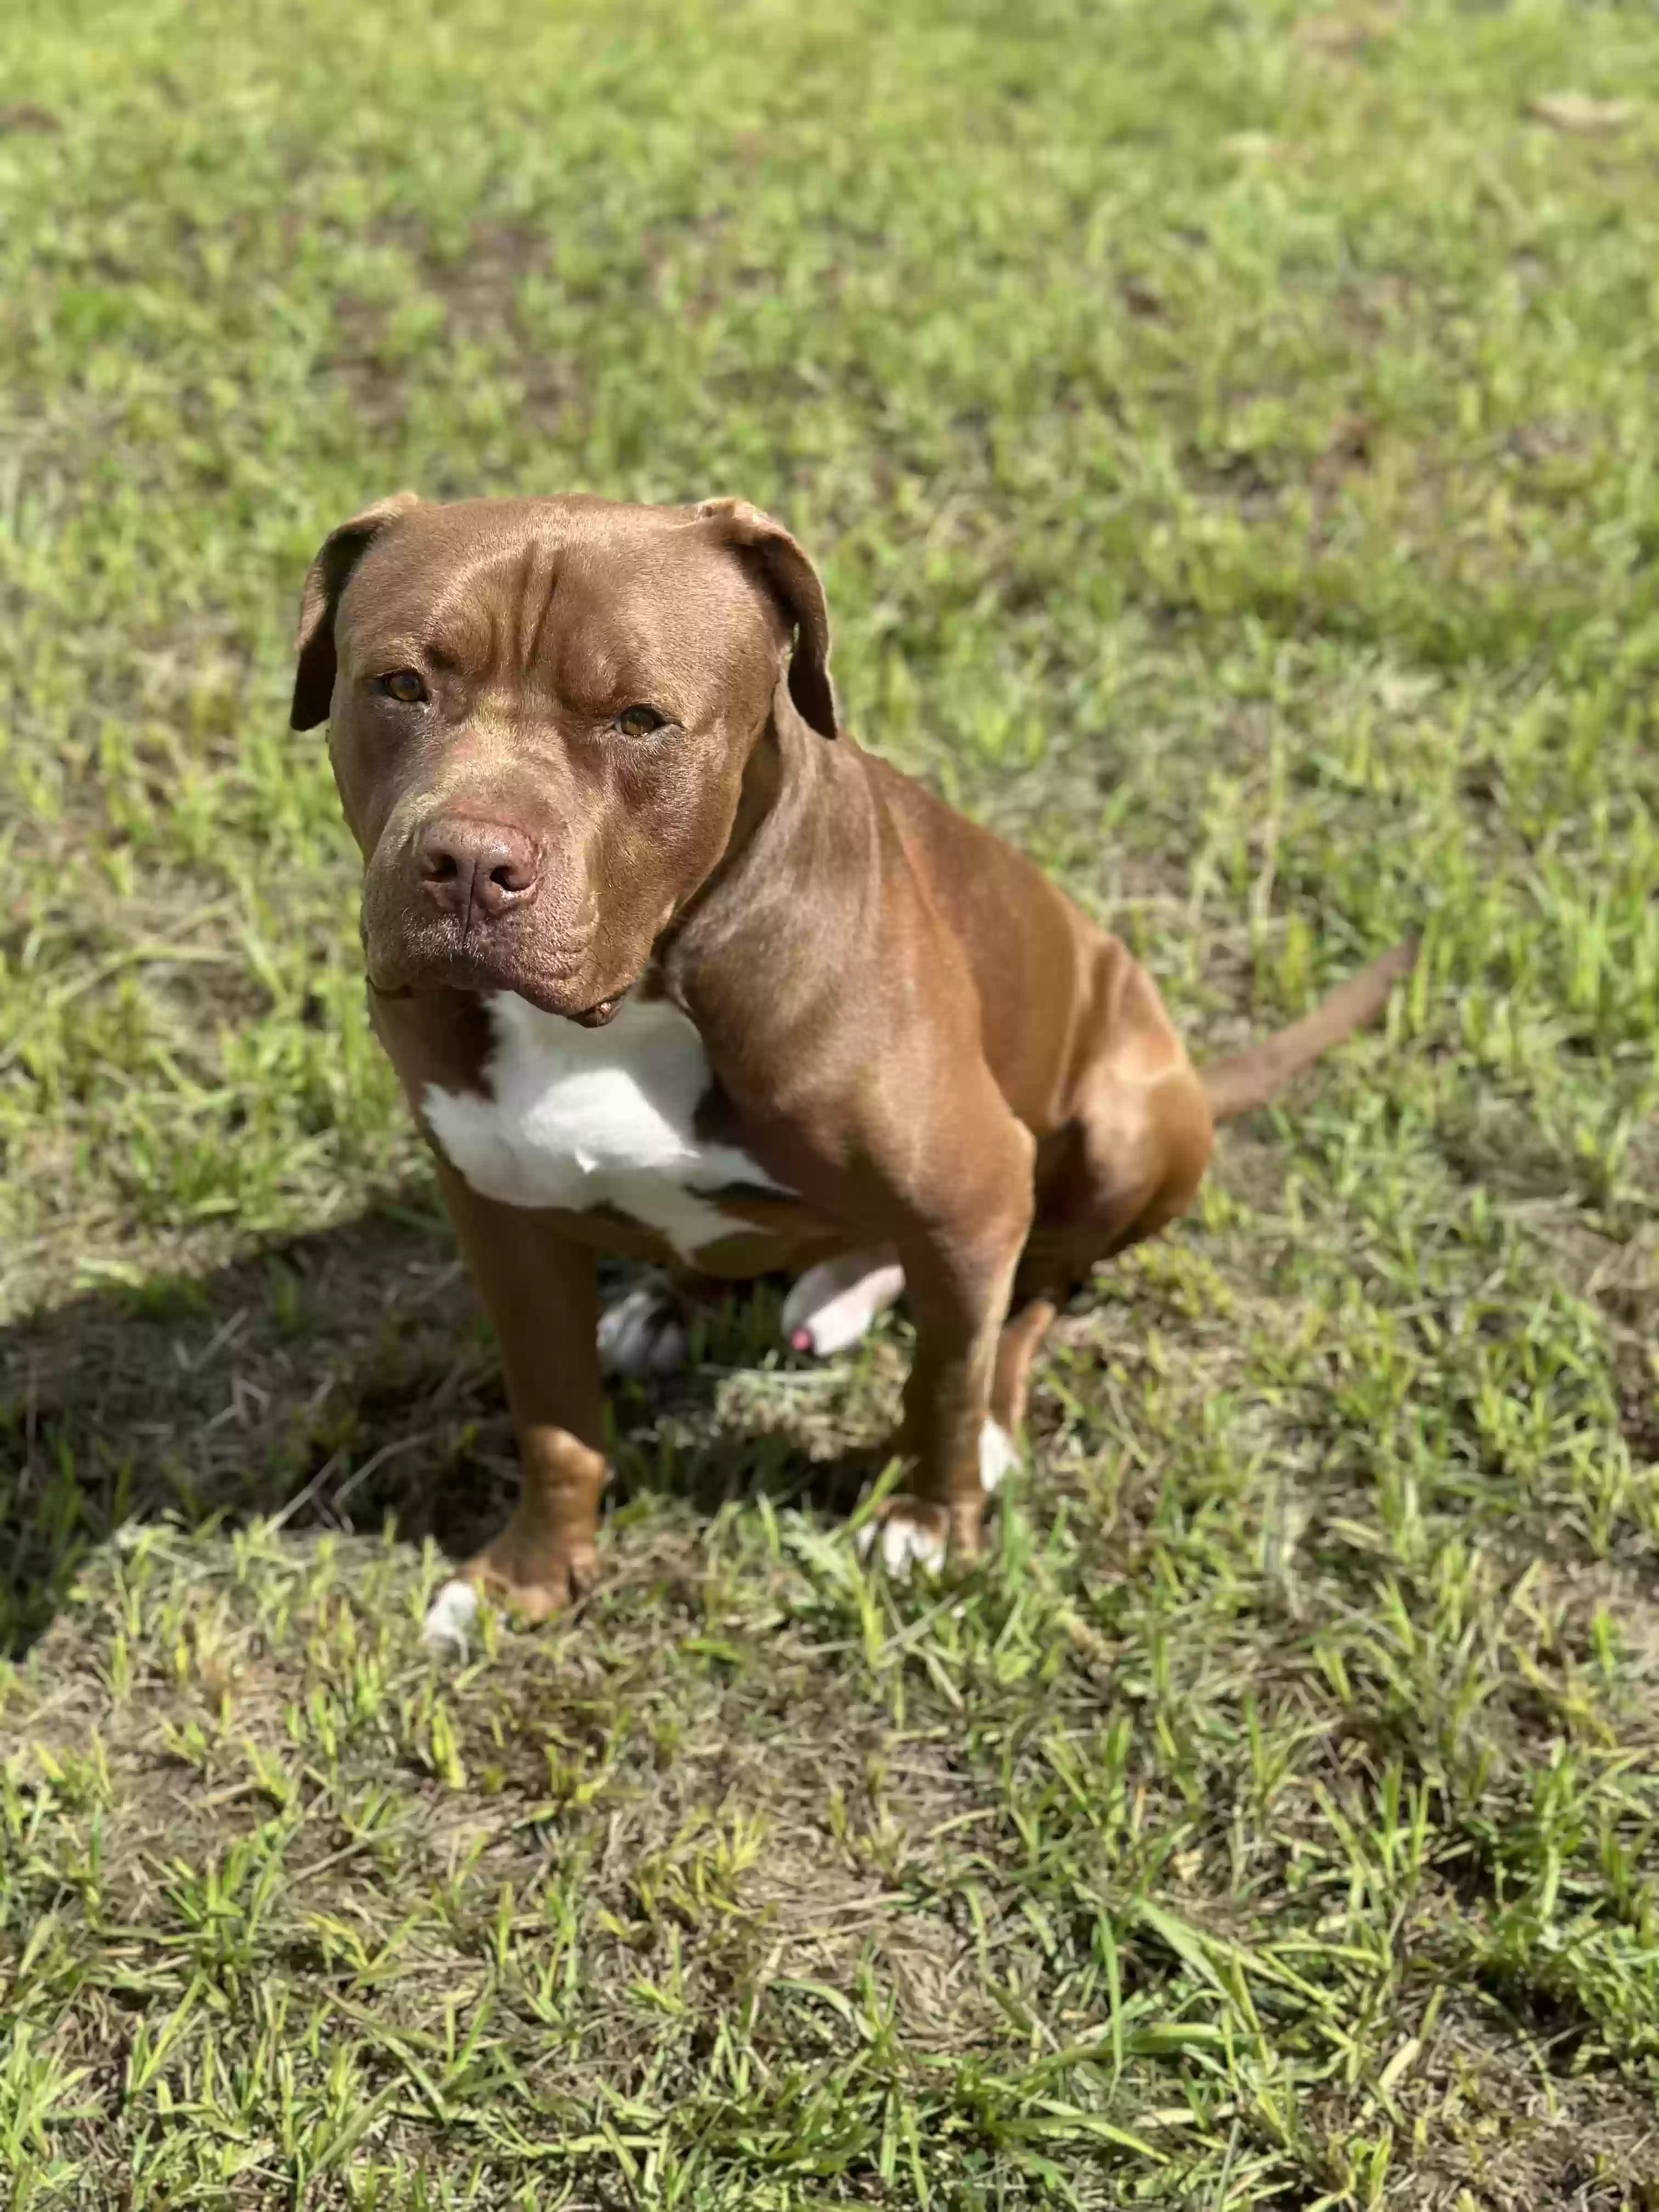 adoptable Dog in Zephyrhills,FL named Duke